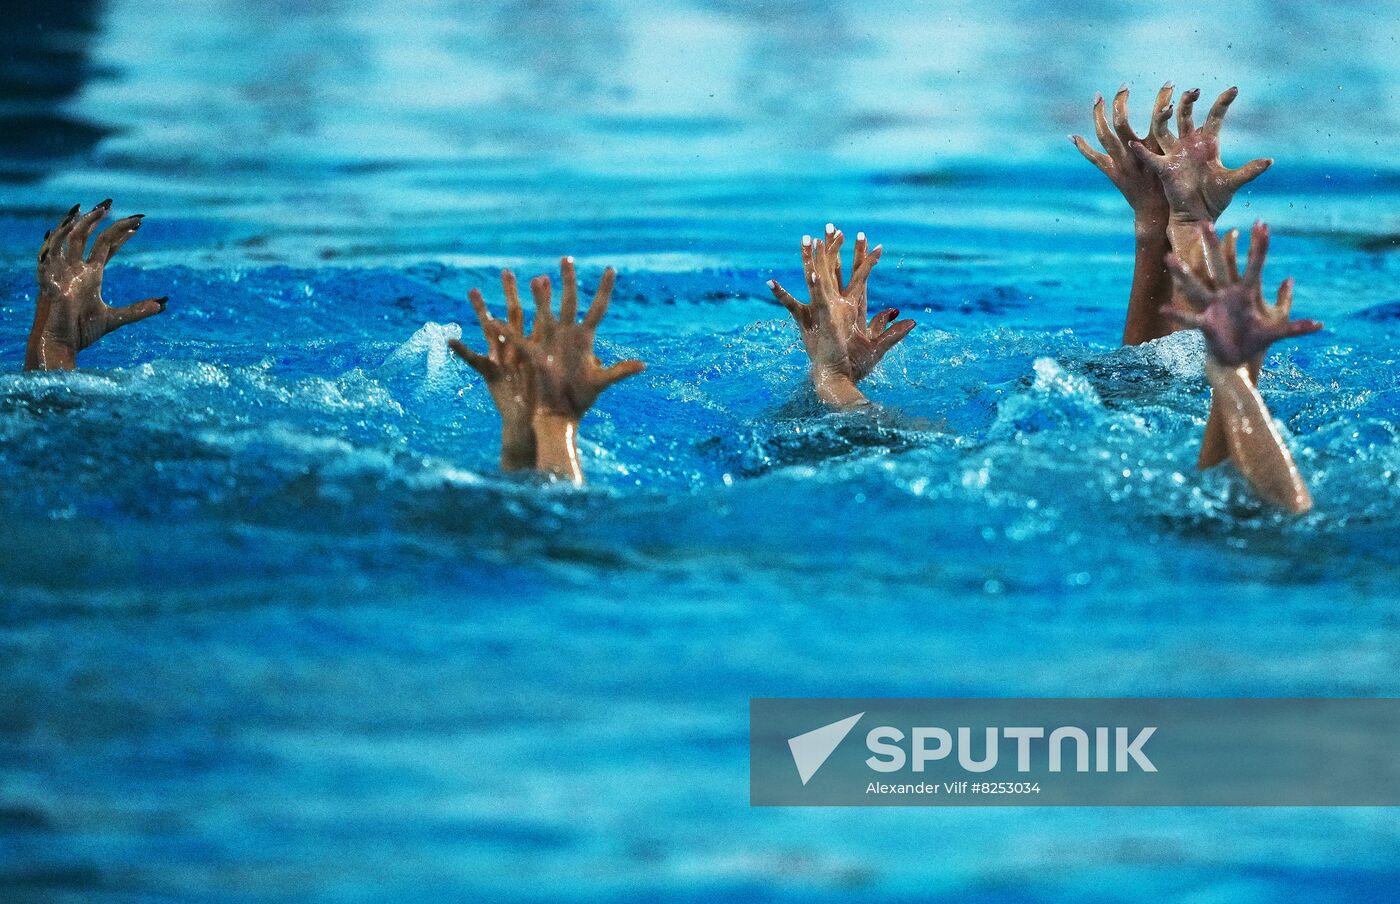 Russia Spartakiad Artistic Swimming